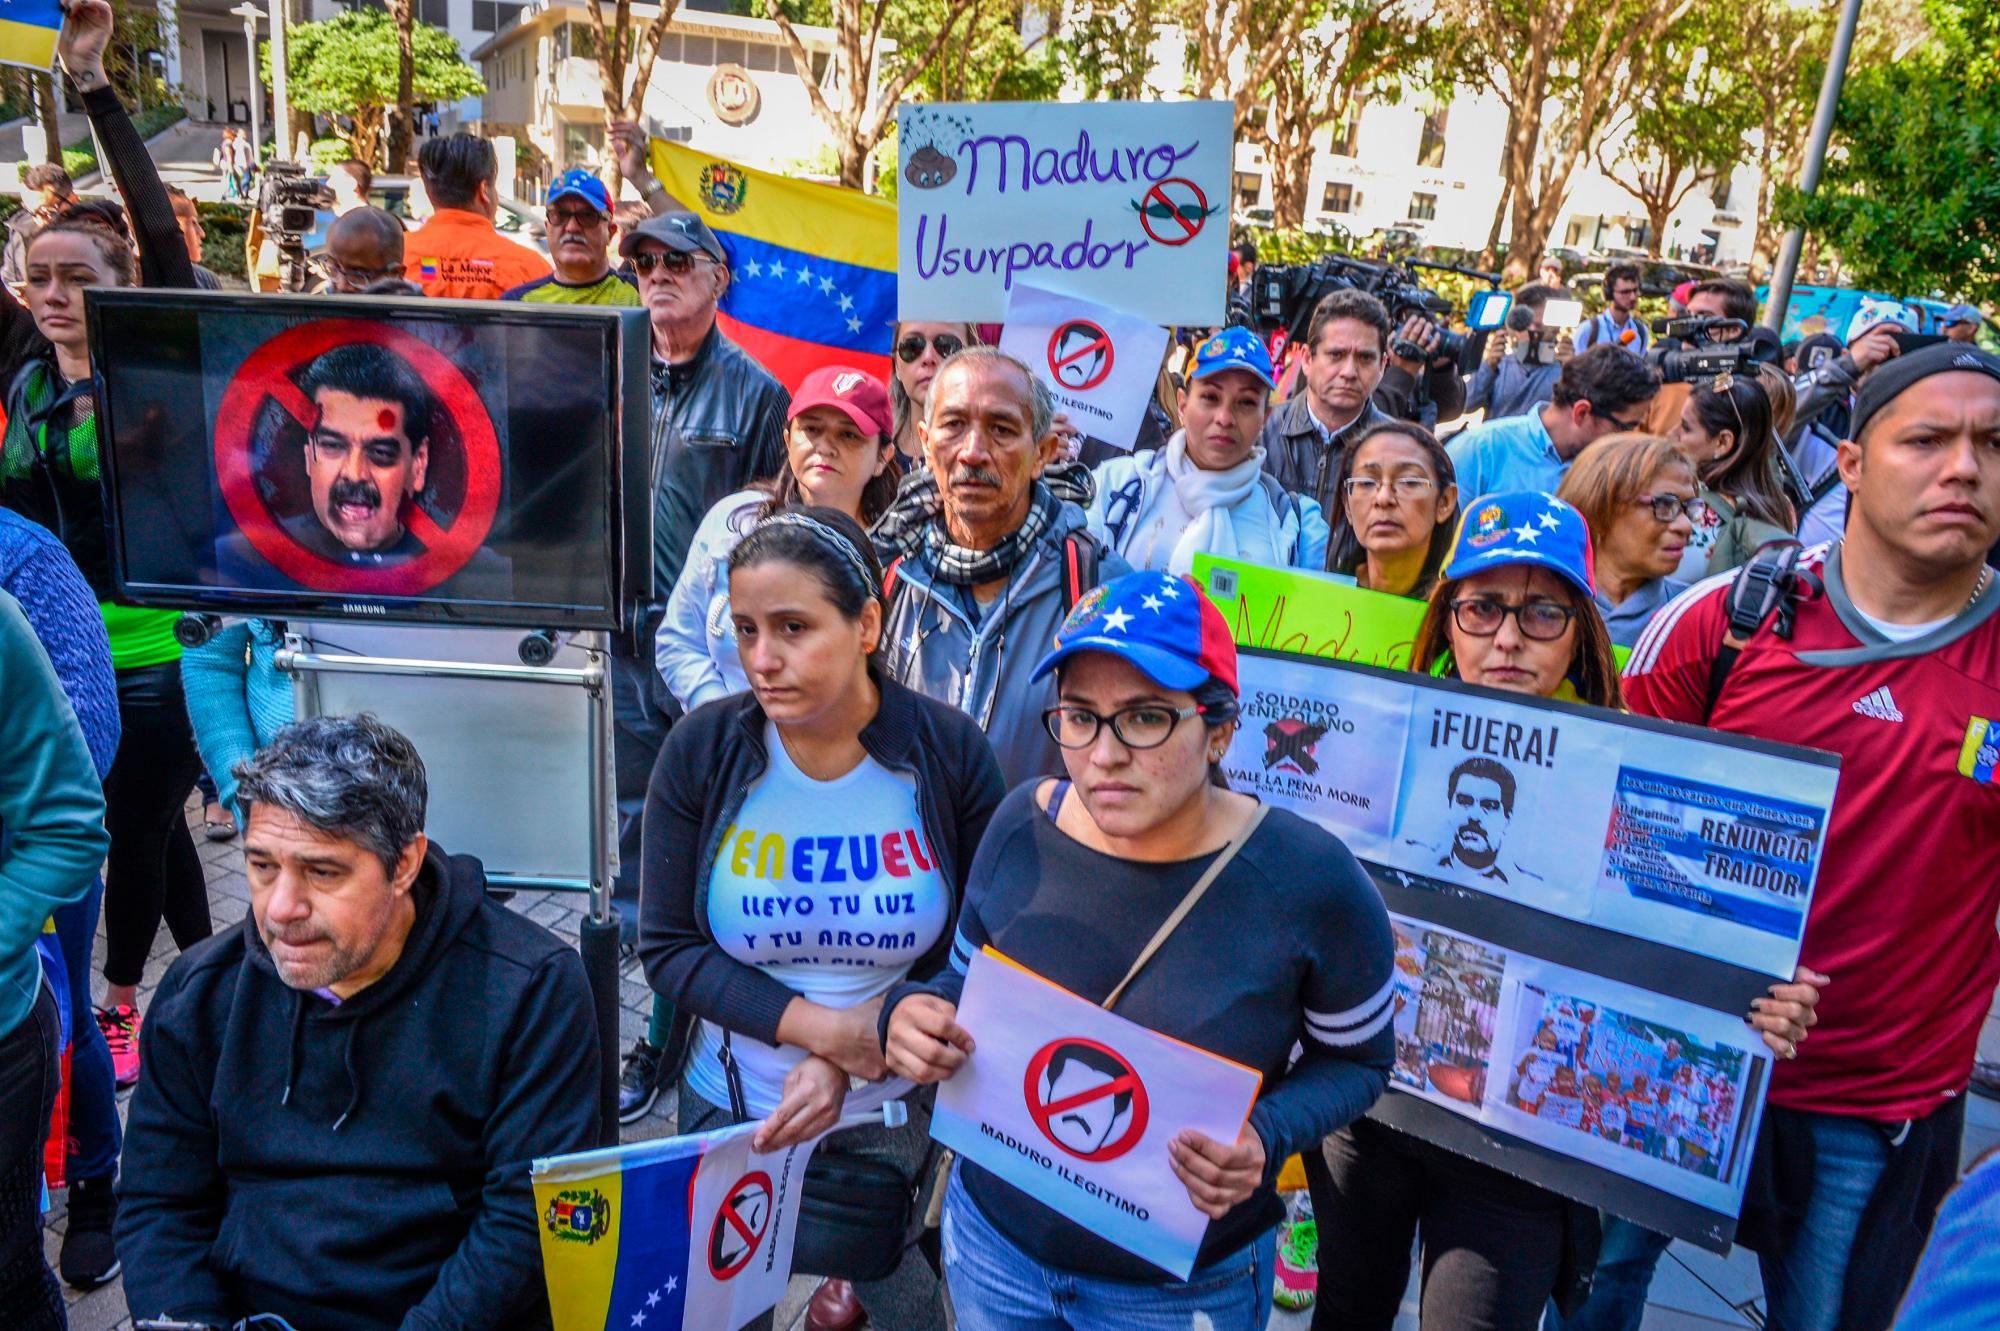 MIAMI (FL, EEUU), 10/01/2019.- Varias personas sostienen caricaturas y pancartas en contra de Maduro durante una manifiestación hoy frente a la sede del consulado de Venezuela en Miami, Florida (EE.UU.). Unas 150 personas se manifestaron hoy en Miami contra la usurpación del poder por parte de Nicolás Maduro y para pedir a la Asamblea Nacional y a la comunidad internacional medidas contundentes que lleven al fin de la dictadura y a una transición hacia la democracia, en palabras de los convocantes.